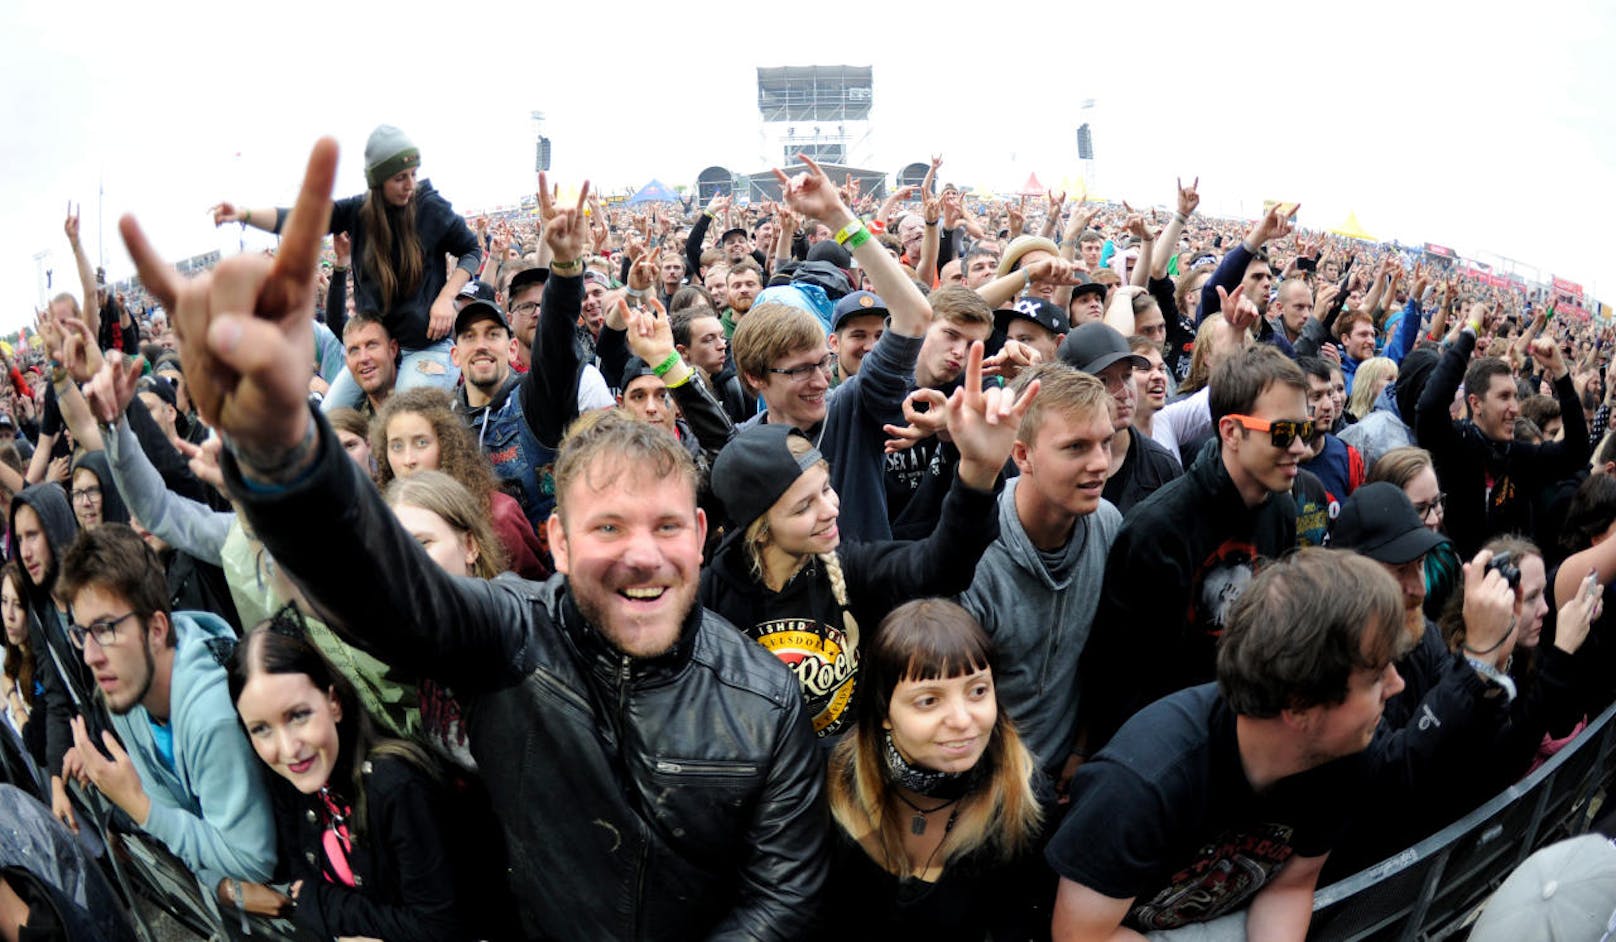 Besucher des Festivals während eines Konzertes der Band "Stone Sour" auf der "Blue Stage" im Rahmen des "Nova Rock 2018" Festivals am Donnerstag, 14. Juni 2018.